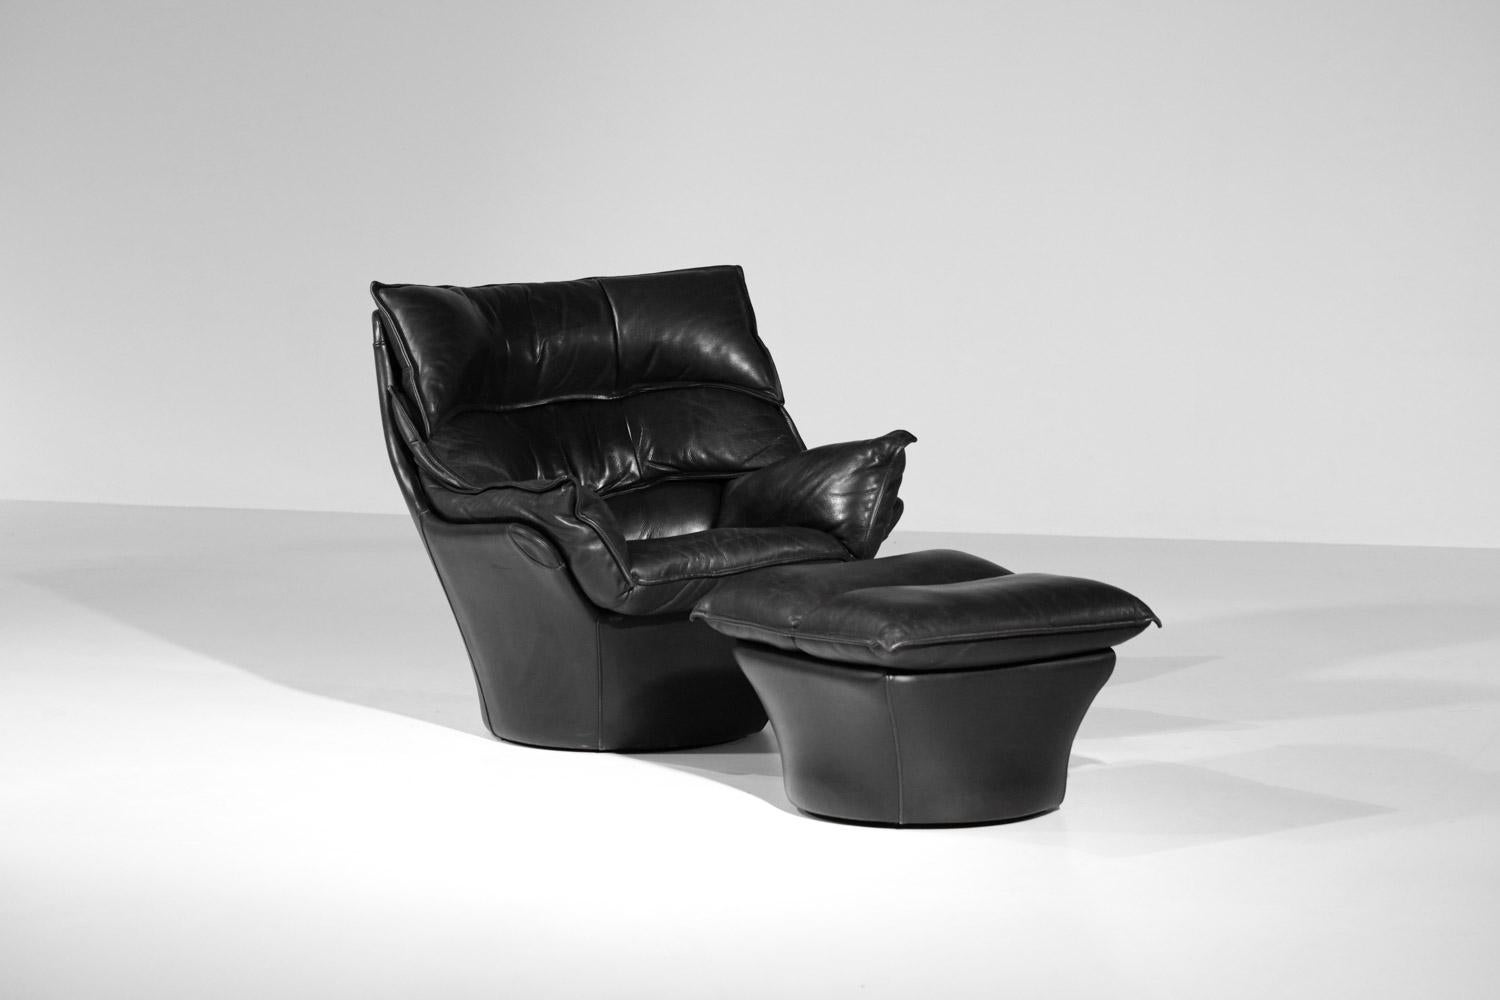 Großer Sessel und Fußstütze aus schwarzem Leder Bernard Massot, Bernard Massot, Jahre 70/80 (Französisch)